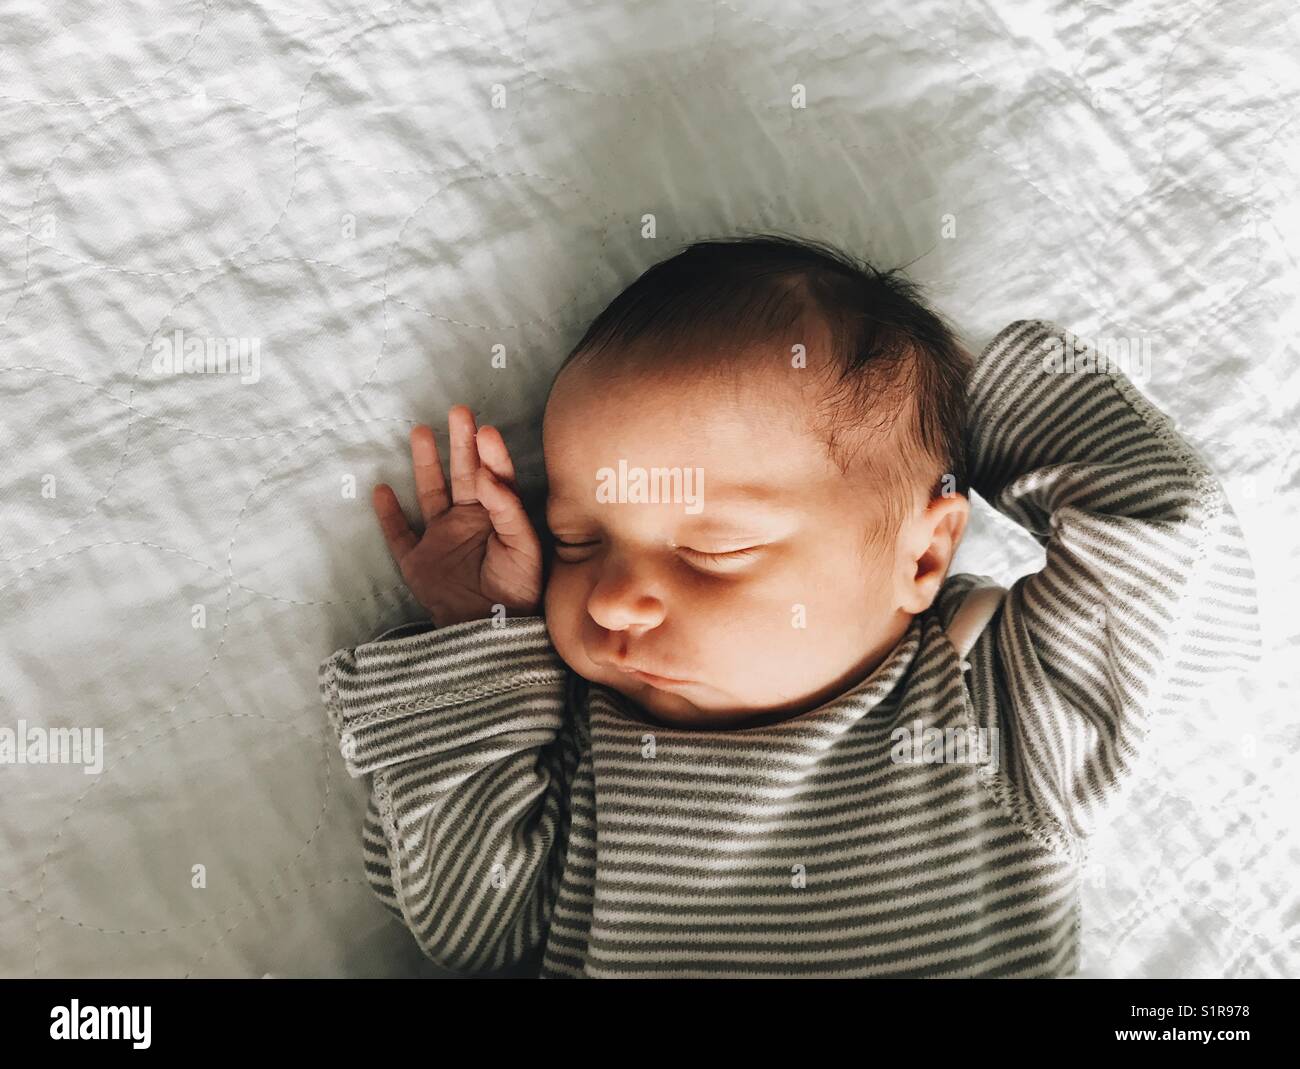 Un bébé nouveau-né fille endormie dans une chemise rayée. Banque D'Images